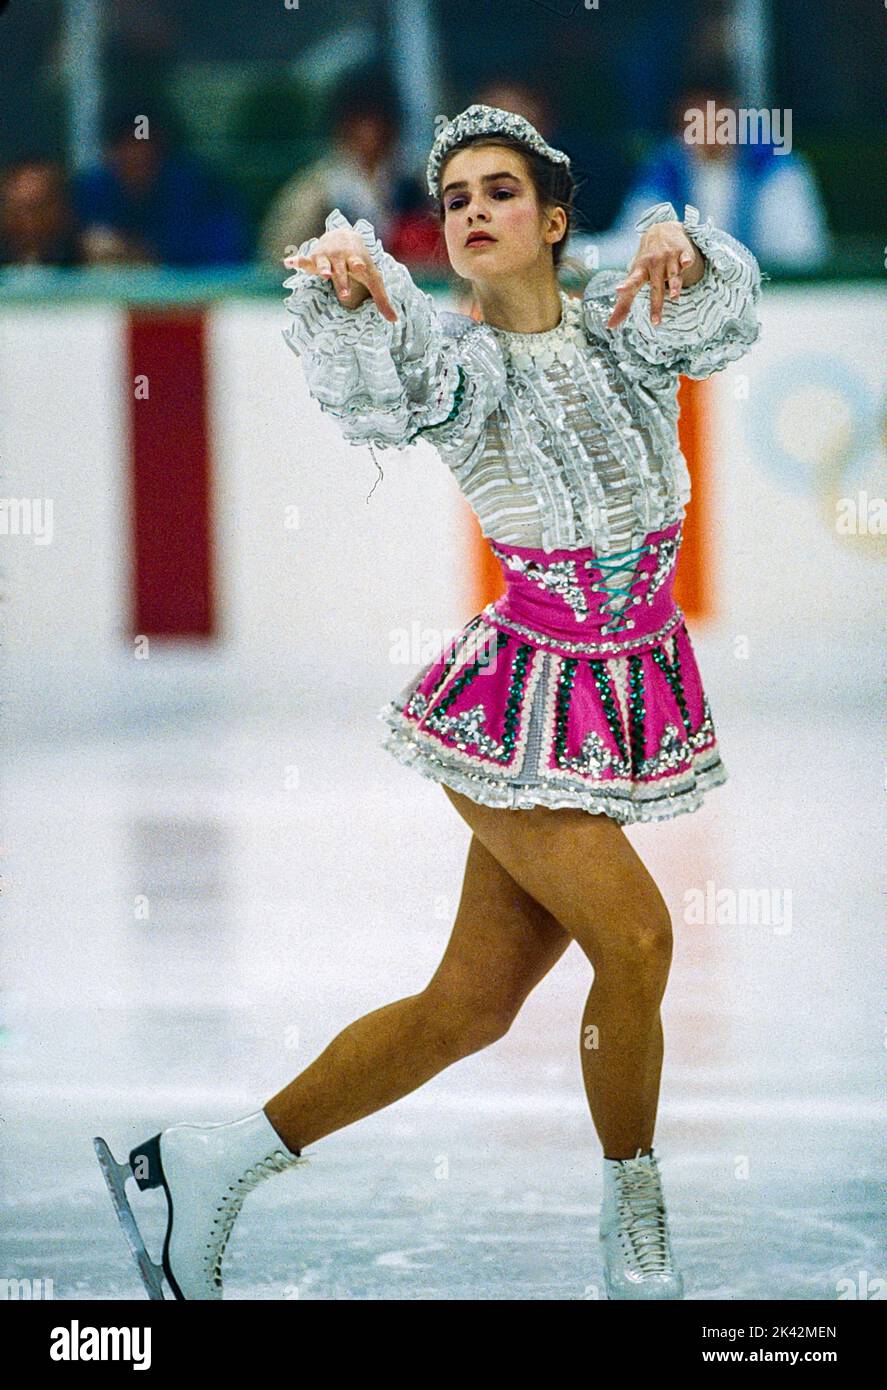 Katarina Witt (GDR) médaillée d'or et championne olympique participant au programme de patinage artistique féminin lors des Jeux olympiques d'hiver de 1984. Banque D'Images